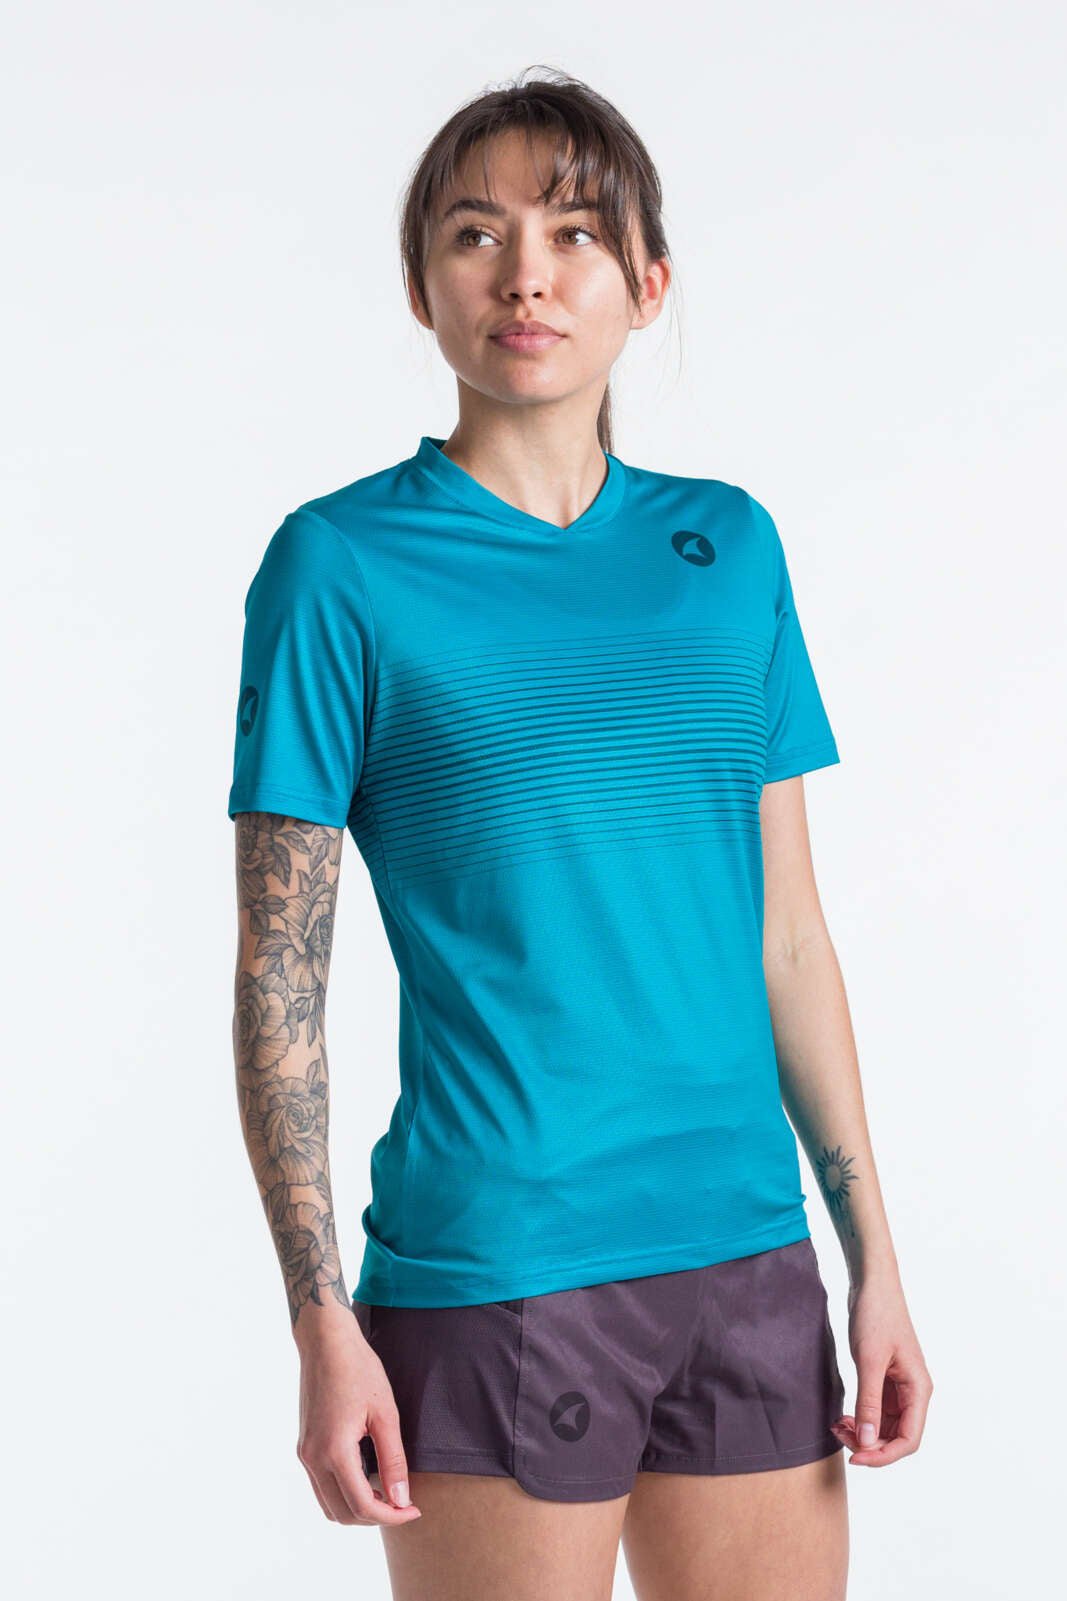 Women's Teal Running Shirt, Breathable & Lightweight